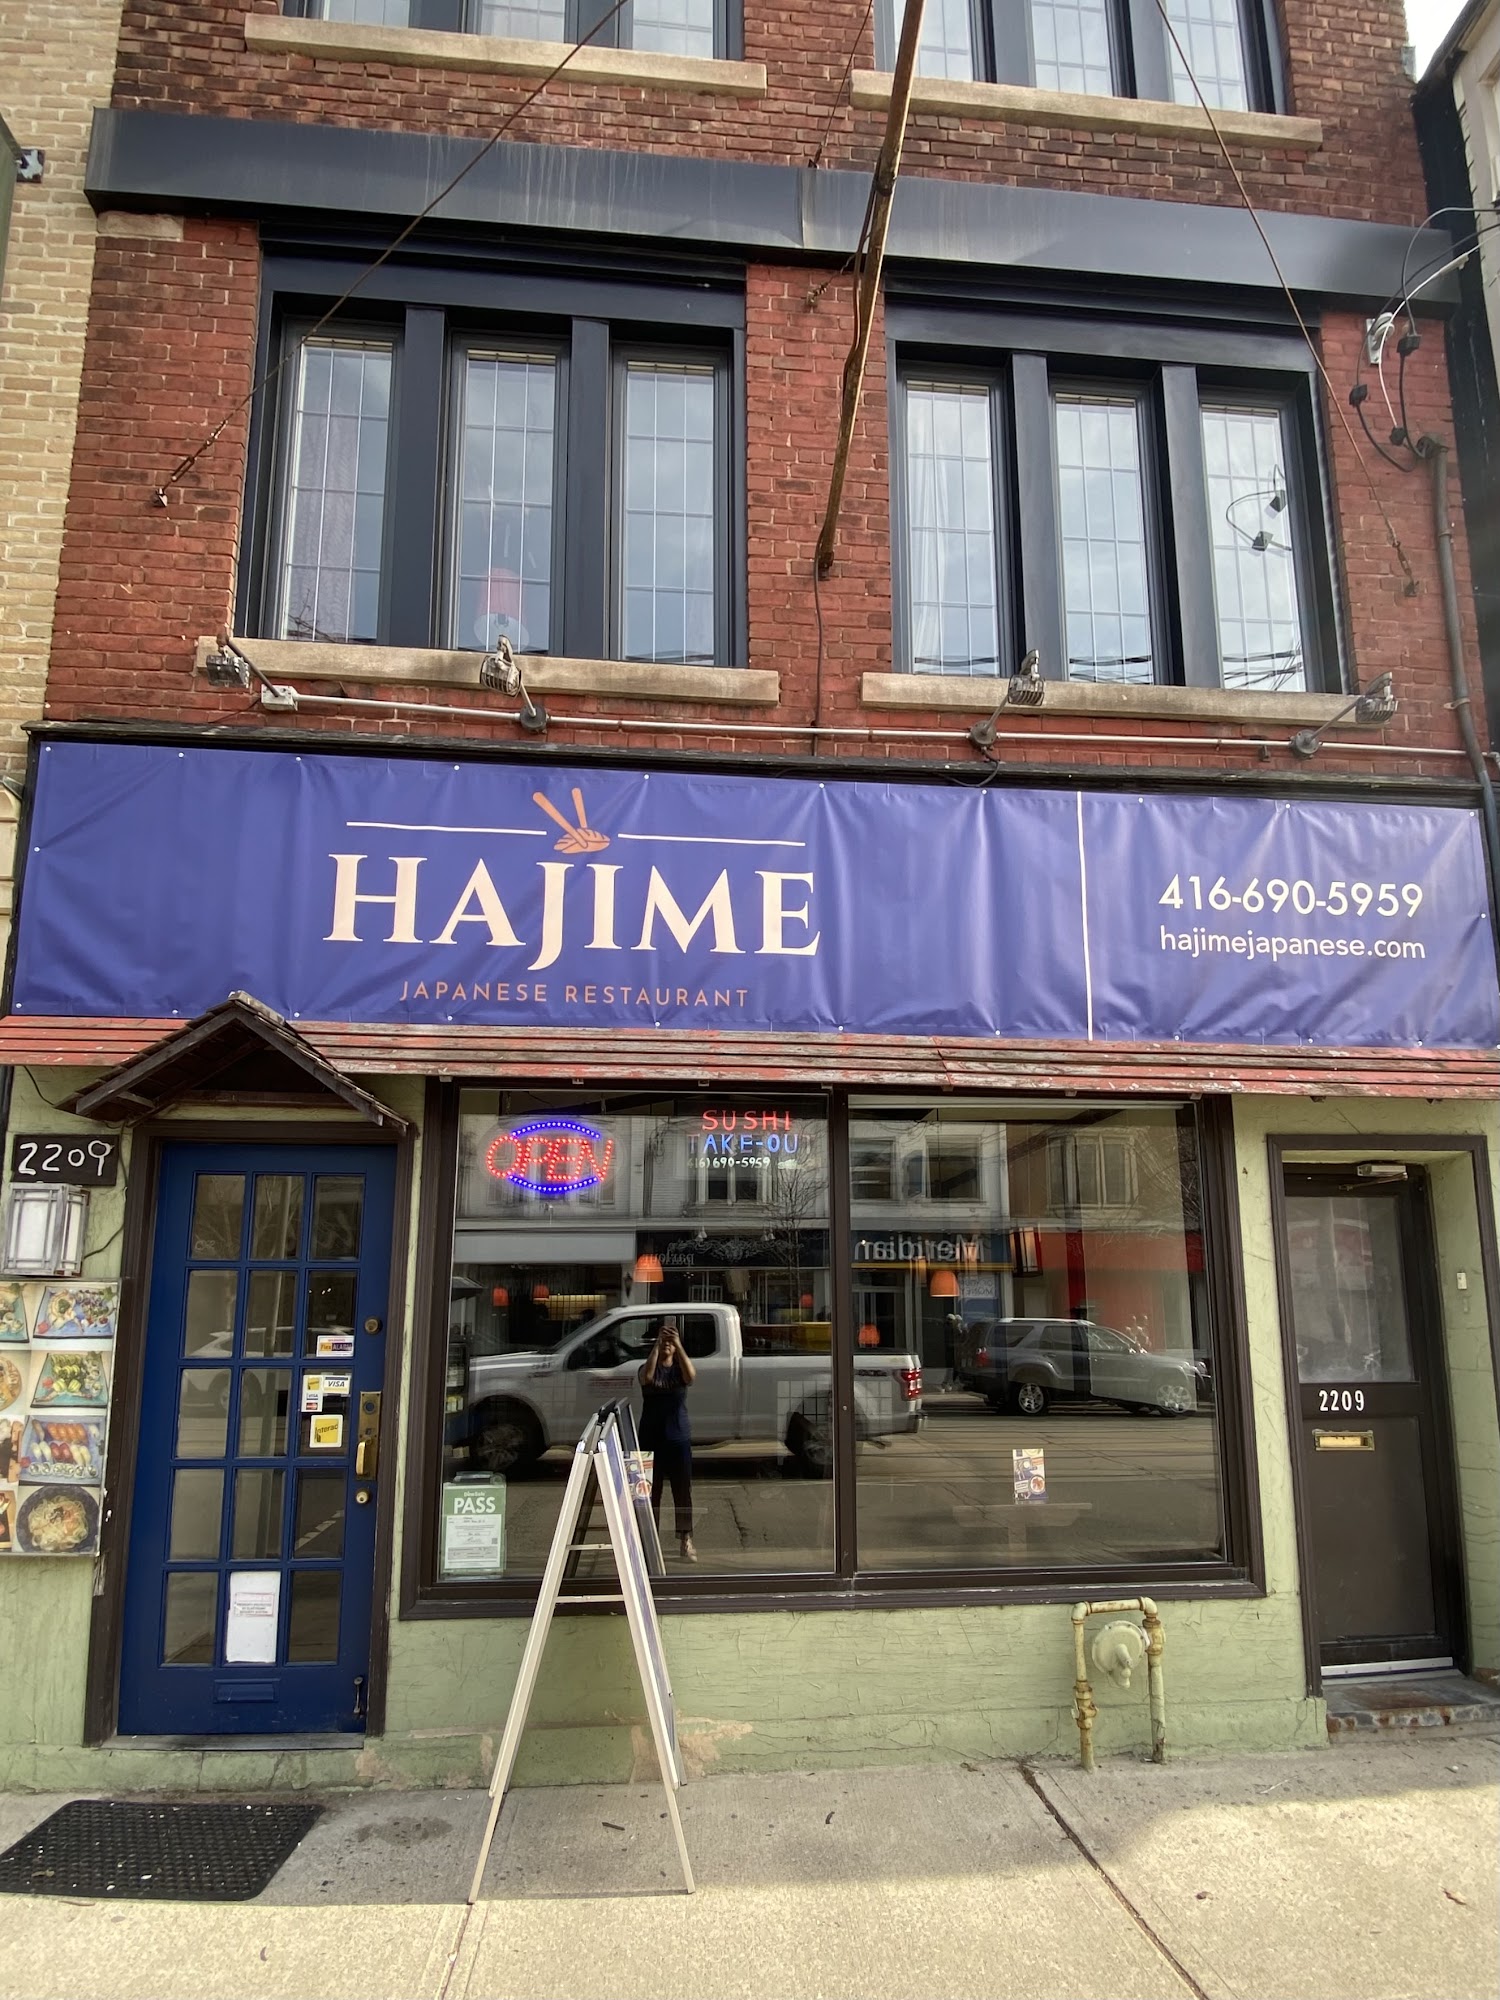 Hajime Japanese restaurant